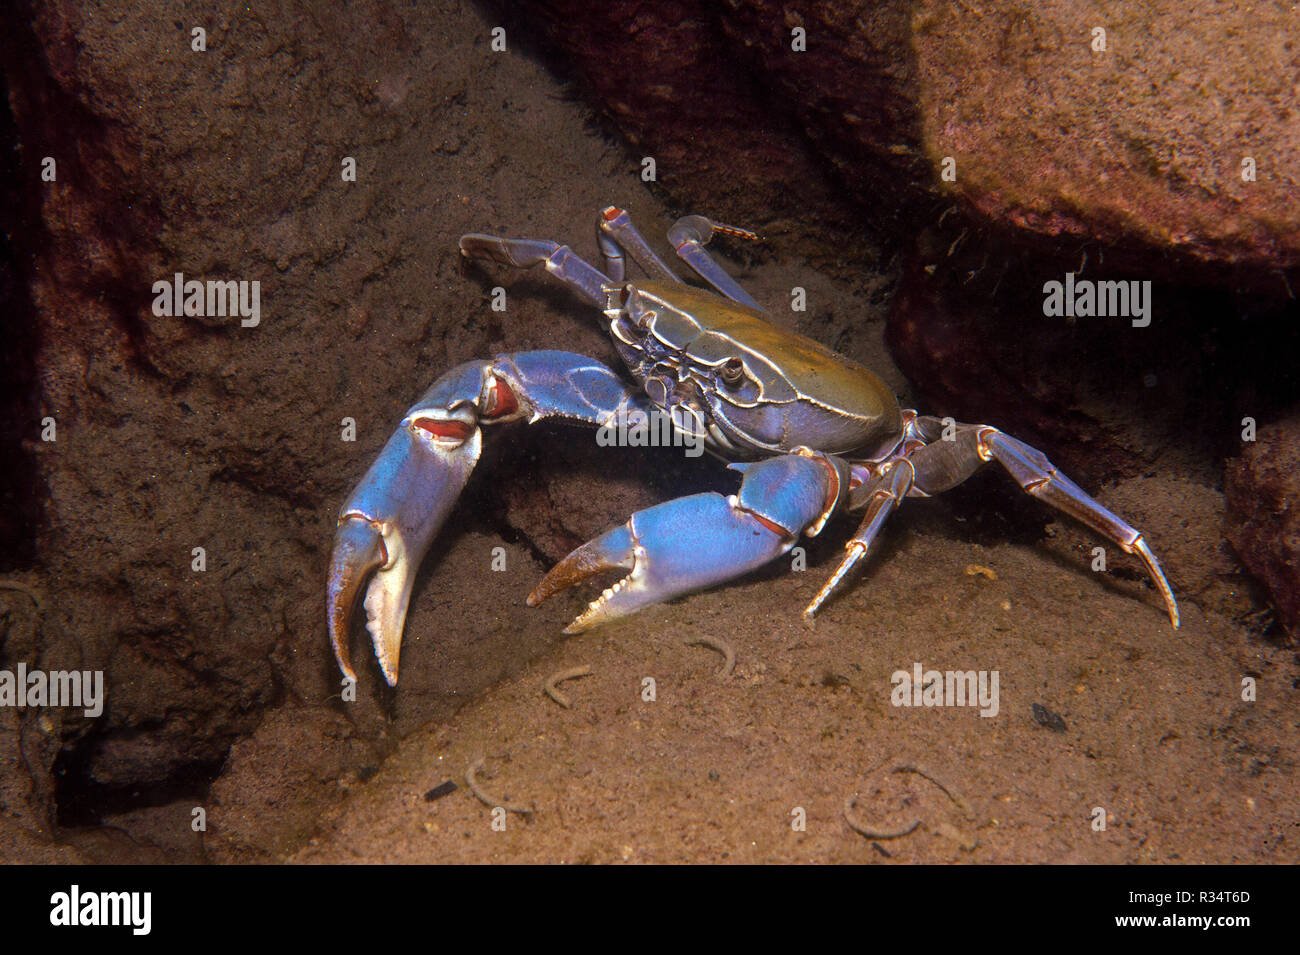 Malawi blue crab (Potamonautes orbitospinus), endemic in Malawi lake, Malawi, East Africa, Africa Stock Photo